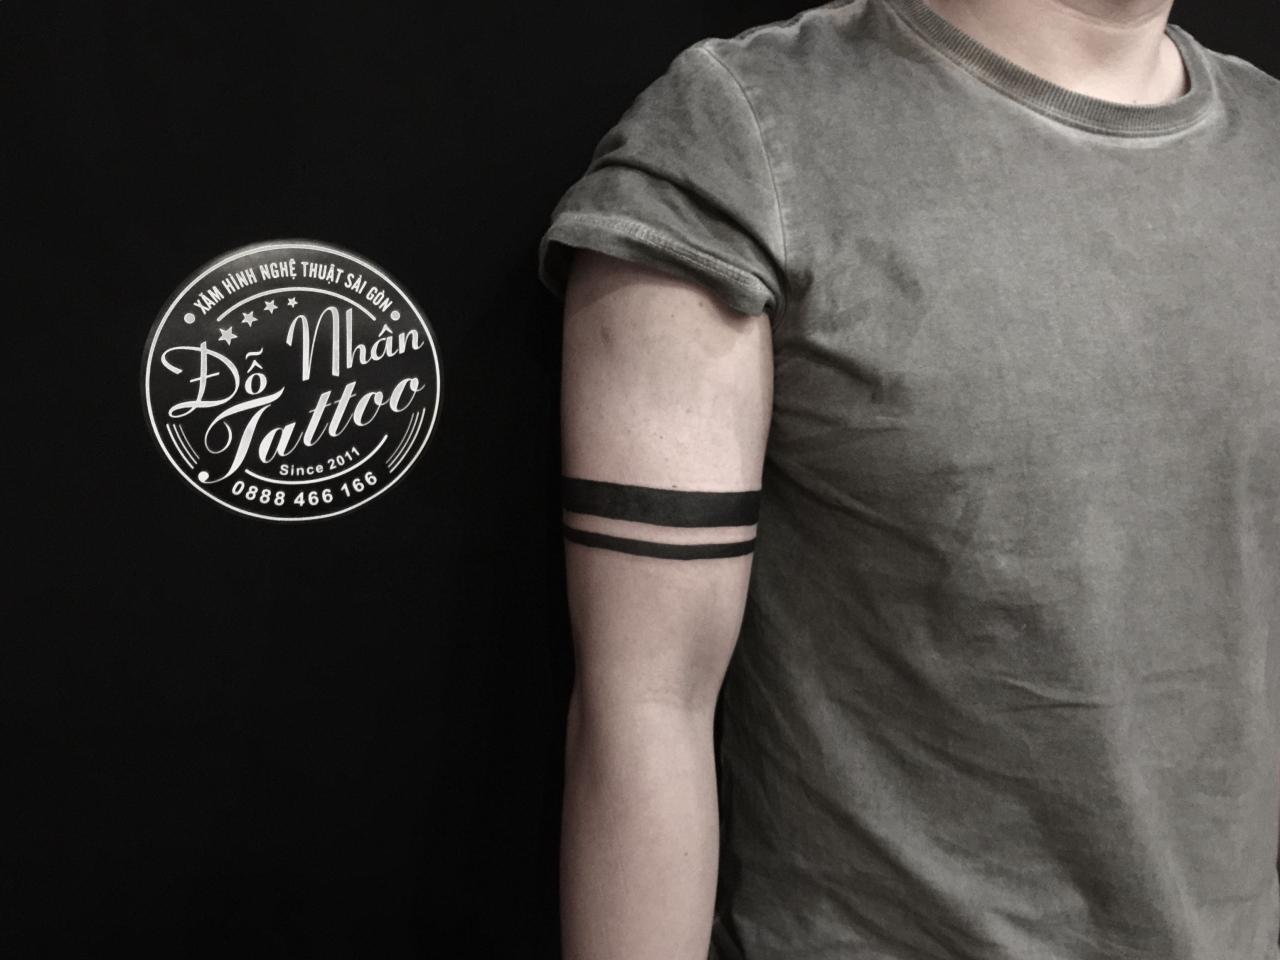 Pin On Những Tác Phẩm Hình Xăm Bởi Đỗ Nhân Tattoo Sutudio Thực Hiện